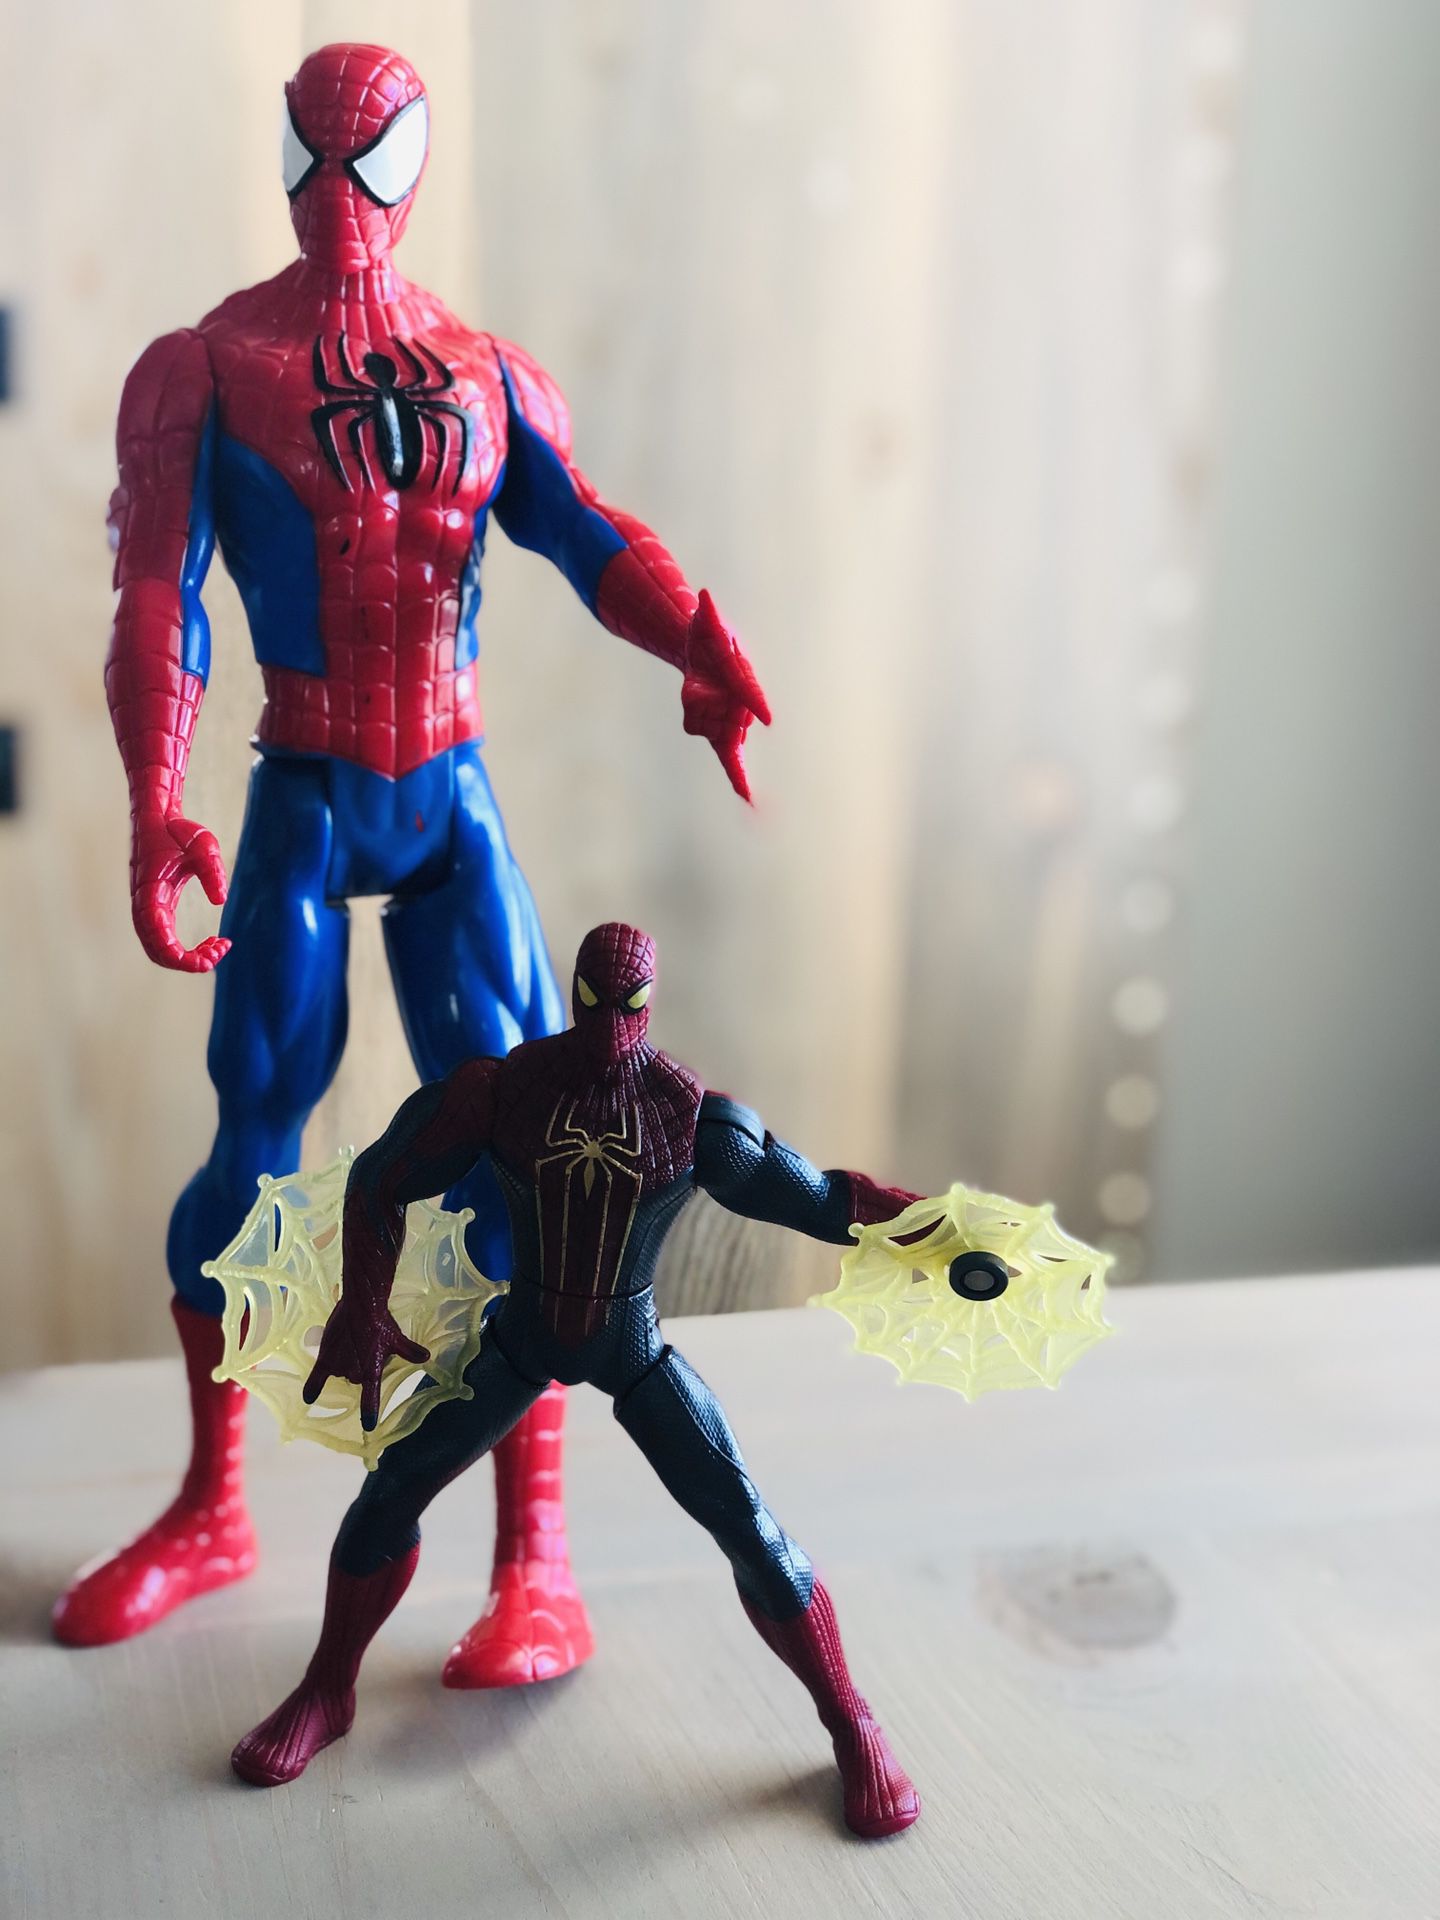 Spider-Man figures